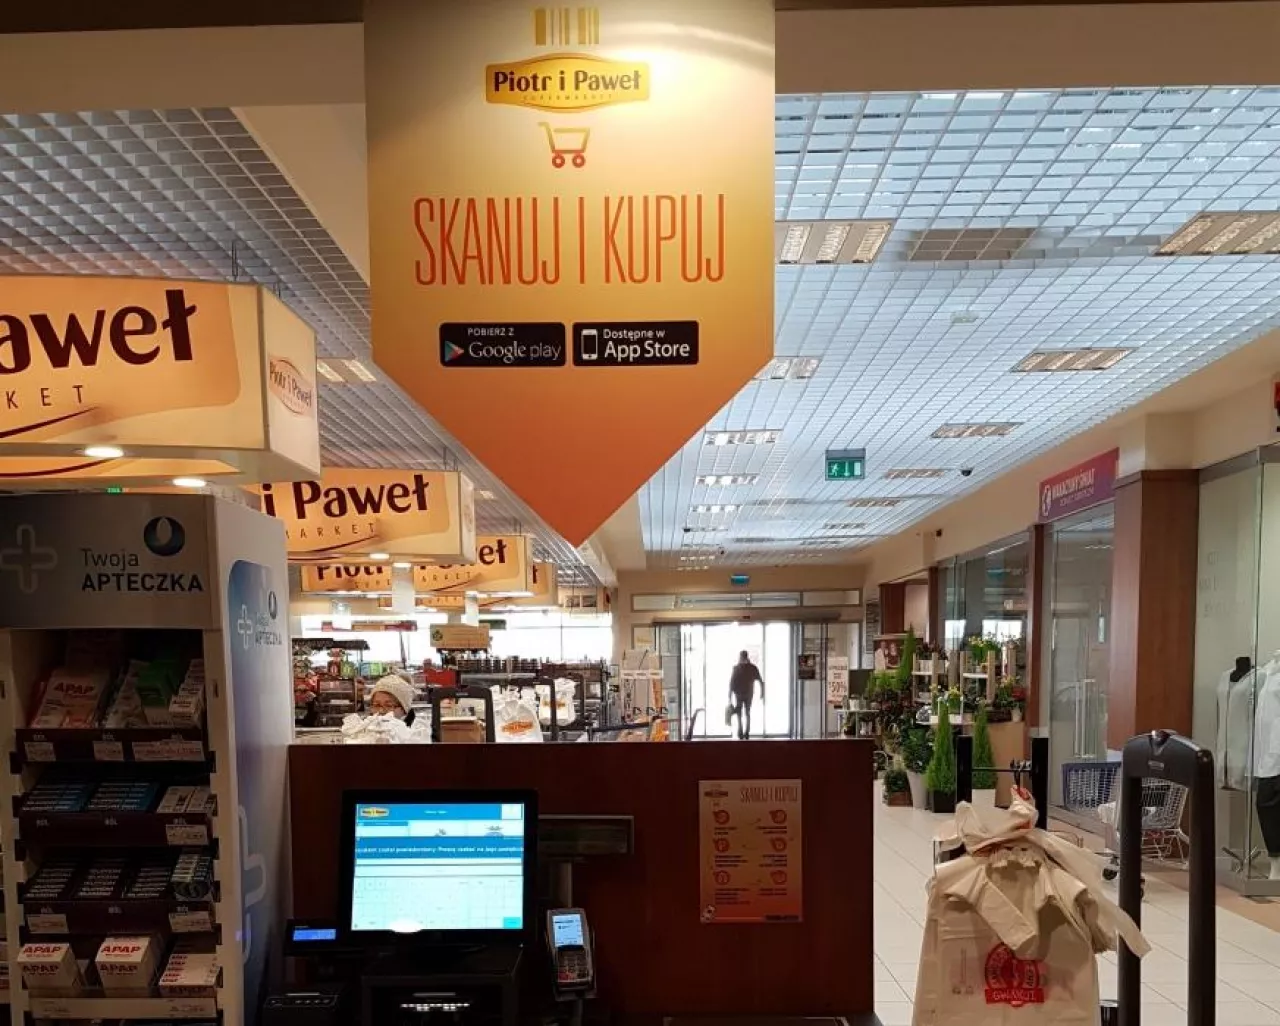 Usługa Skanuj i Kupuj w sklepie Piotr i Paweł (materiały prasowe, Piotr i Paweł)